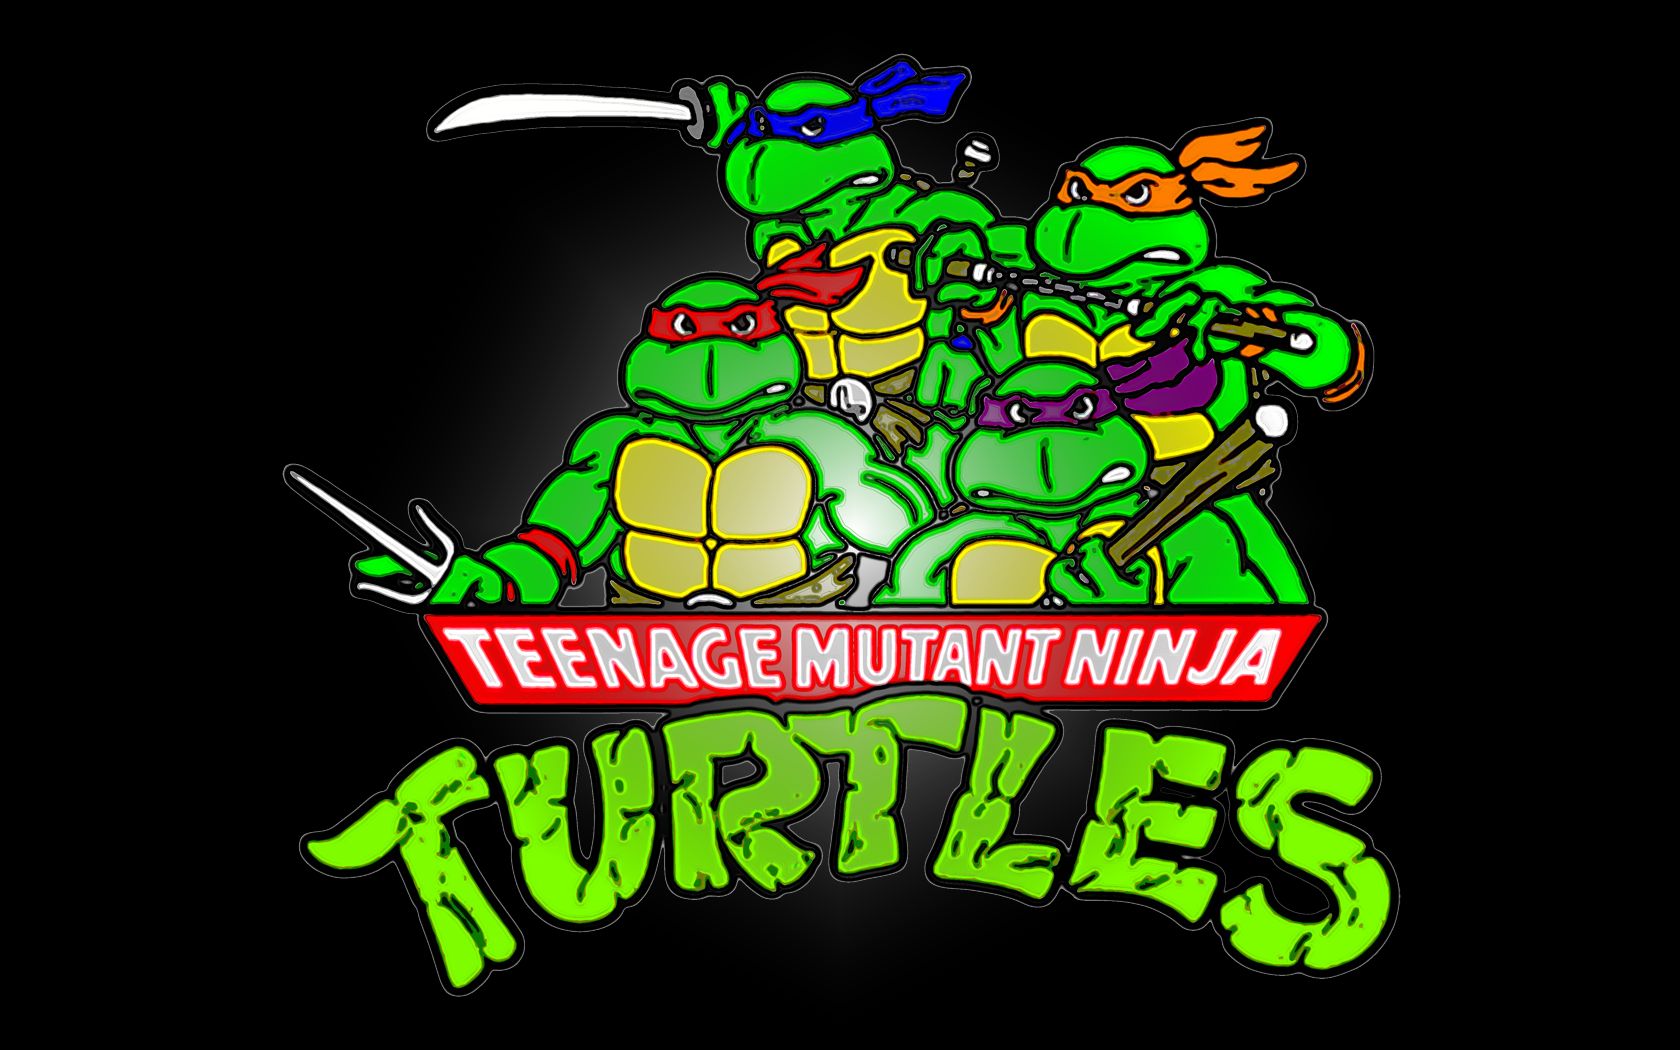 teenage mutant ninja turtles, tmnt, tv show, donatello (tmnt), leonardo (tmnt), michelangelo (tmnt), raphael (tmnt)